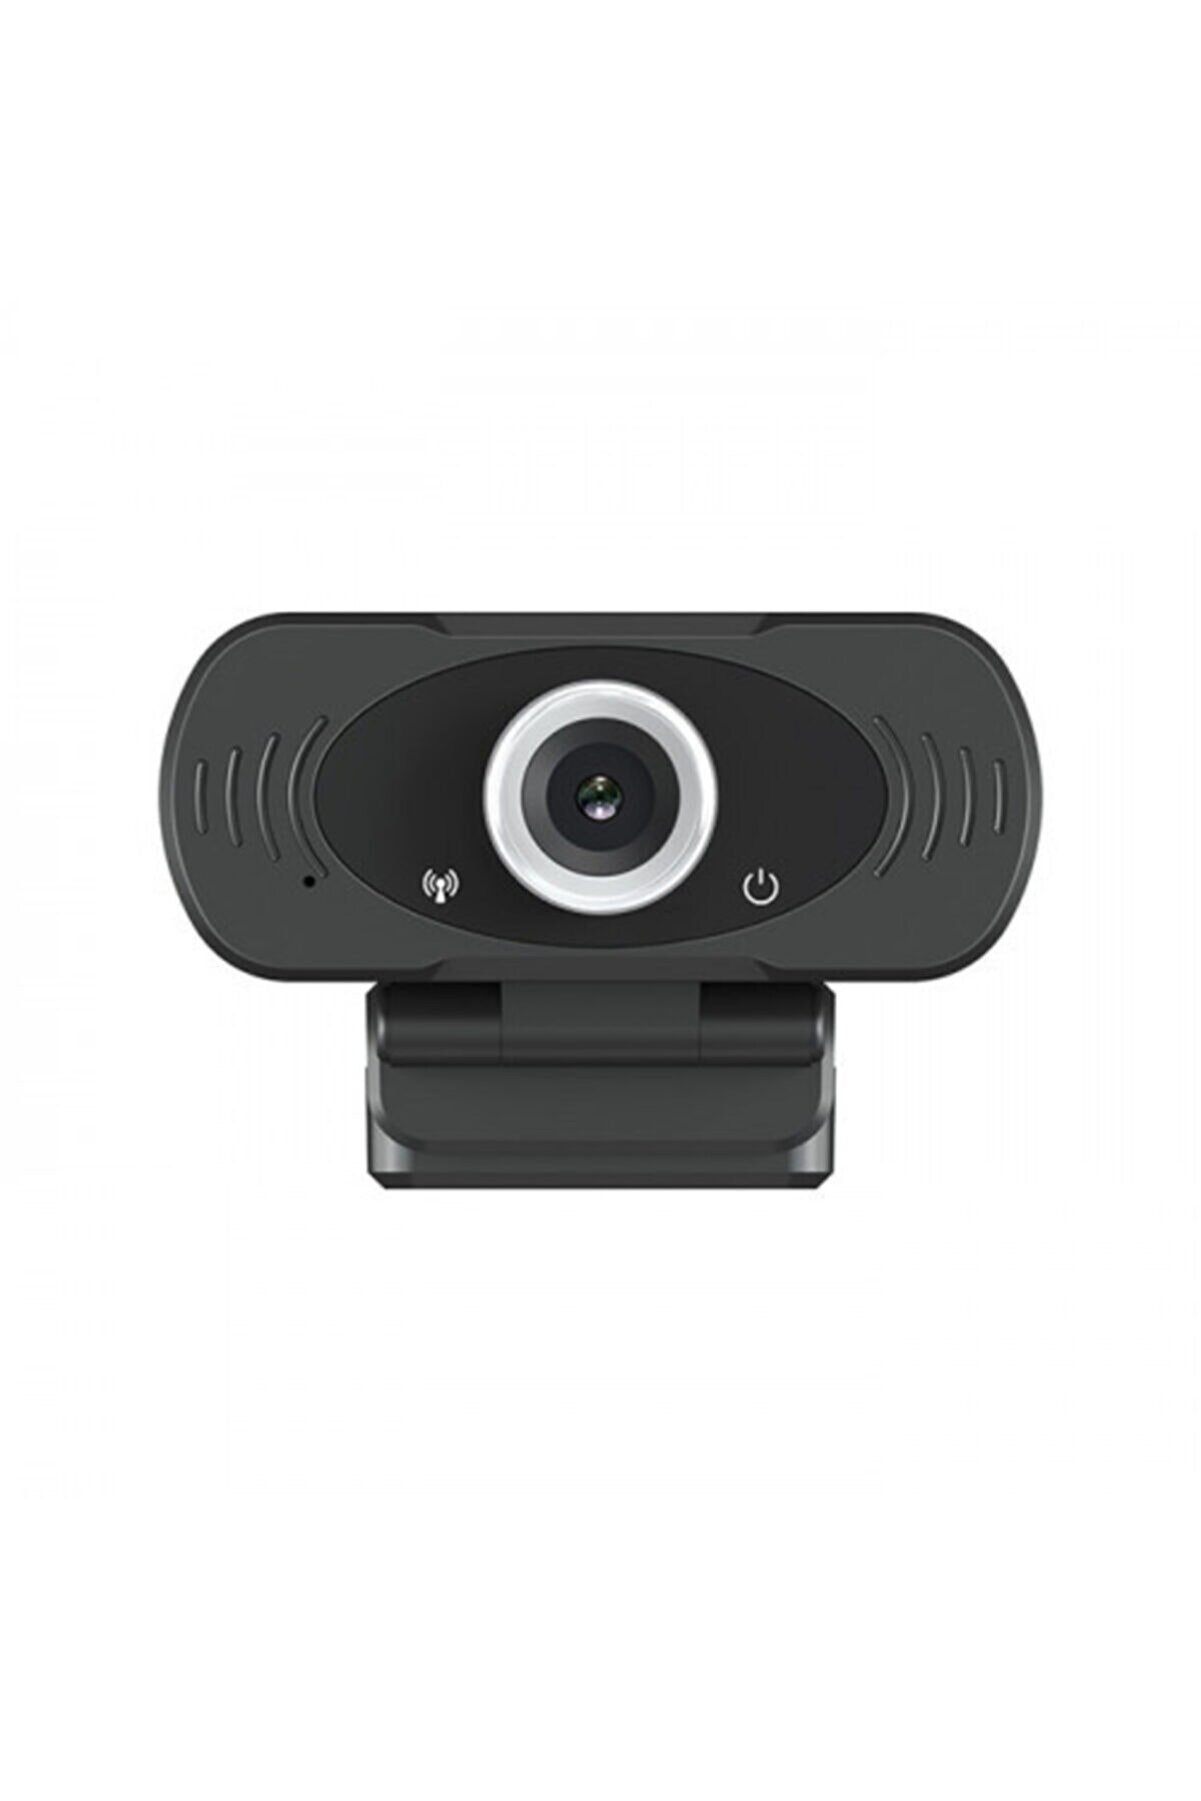 JUNGLEE Mikrofonlu Webcam Zoom Eba Destekli Hd Pc Kamera 1080p Usb Girişli